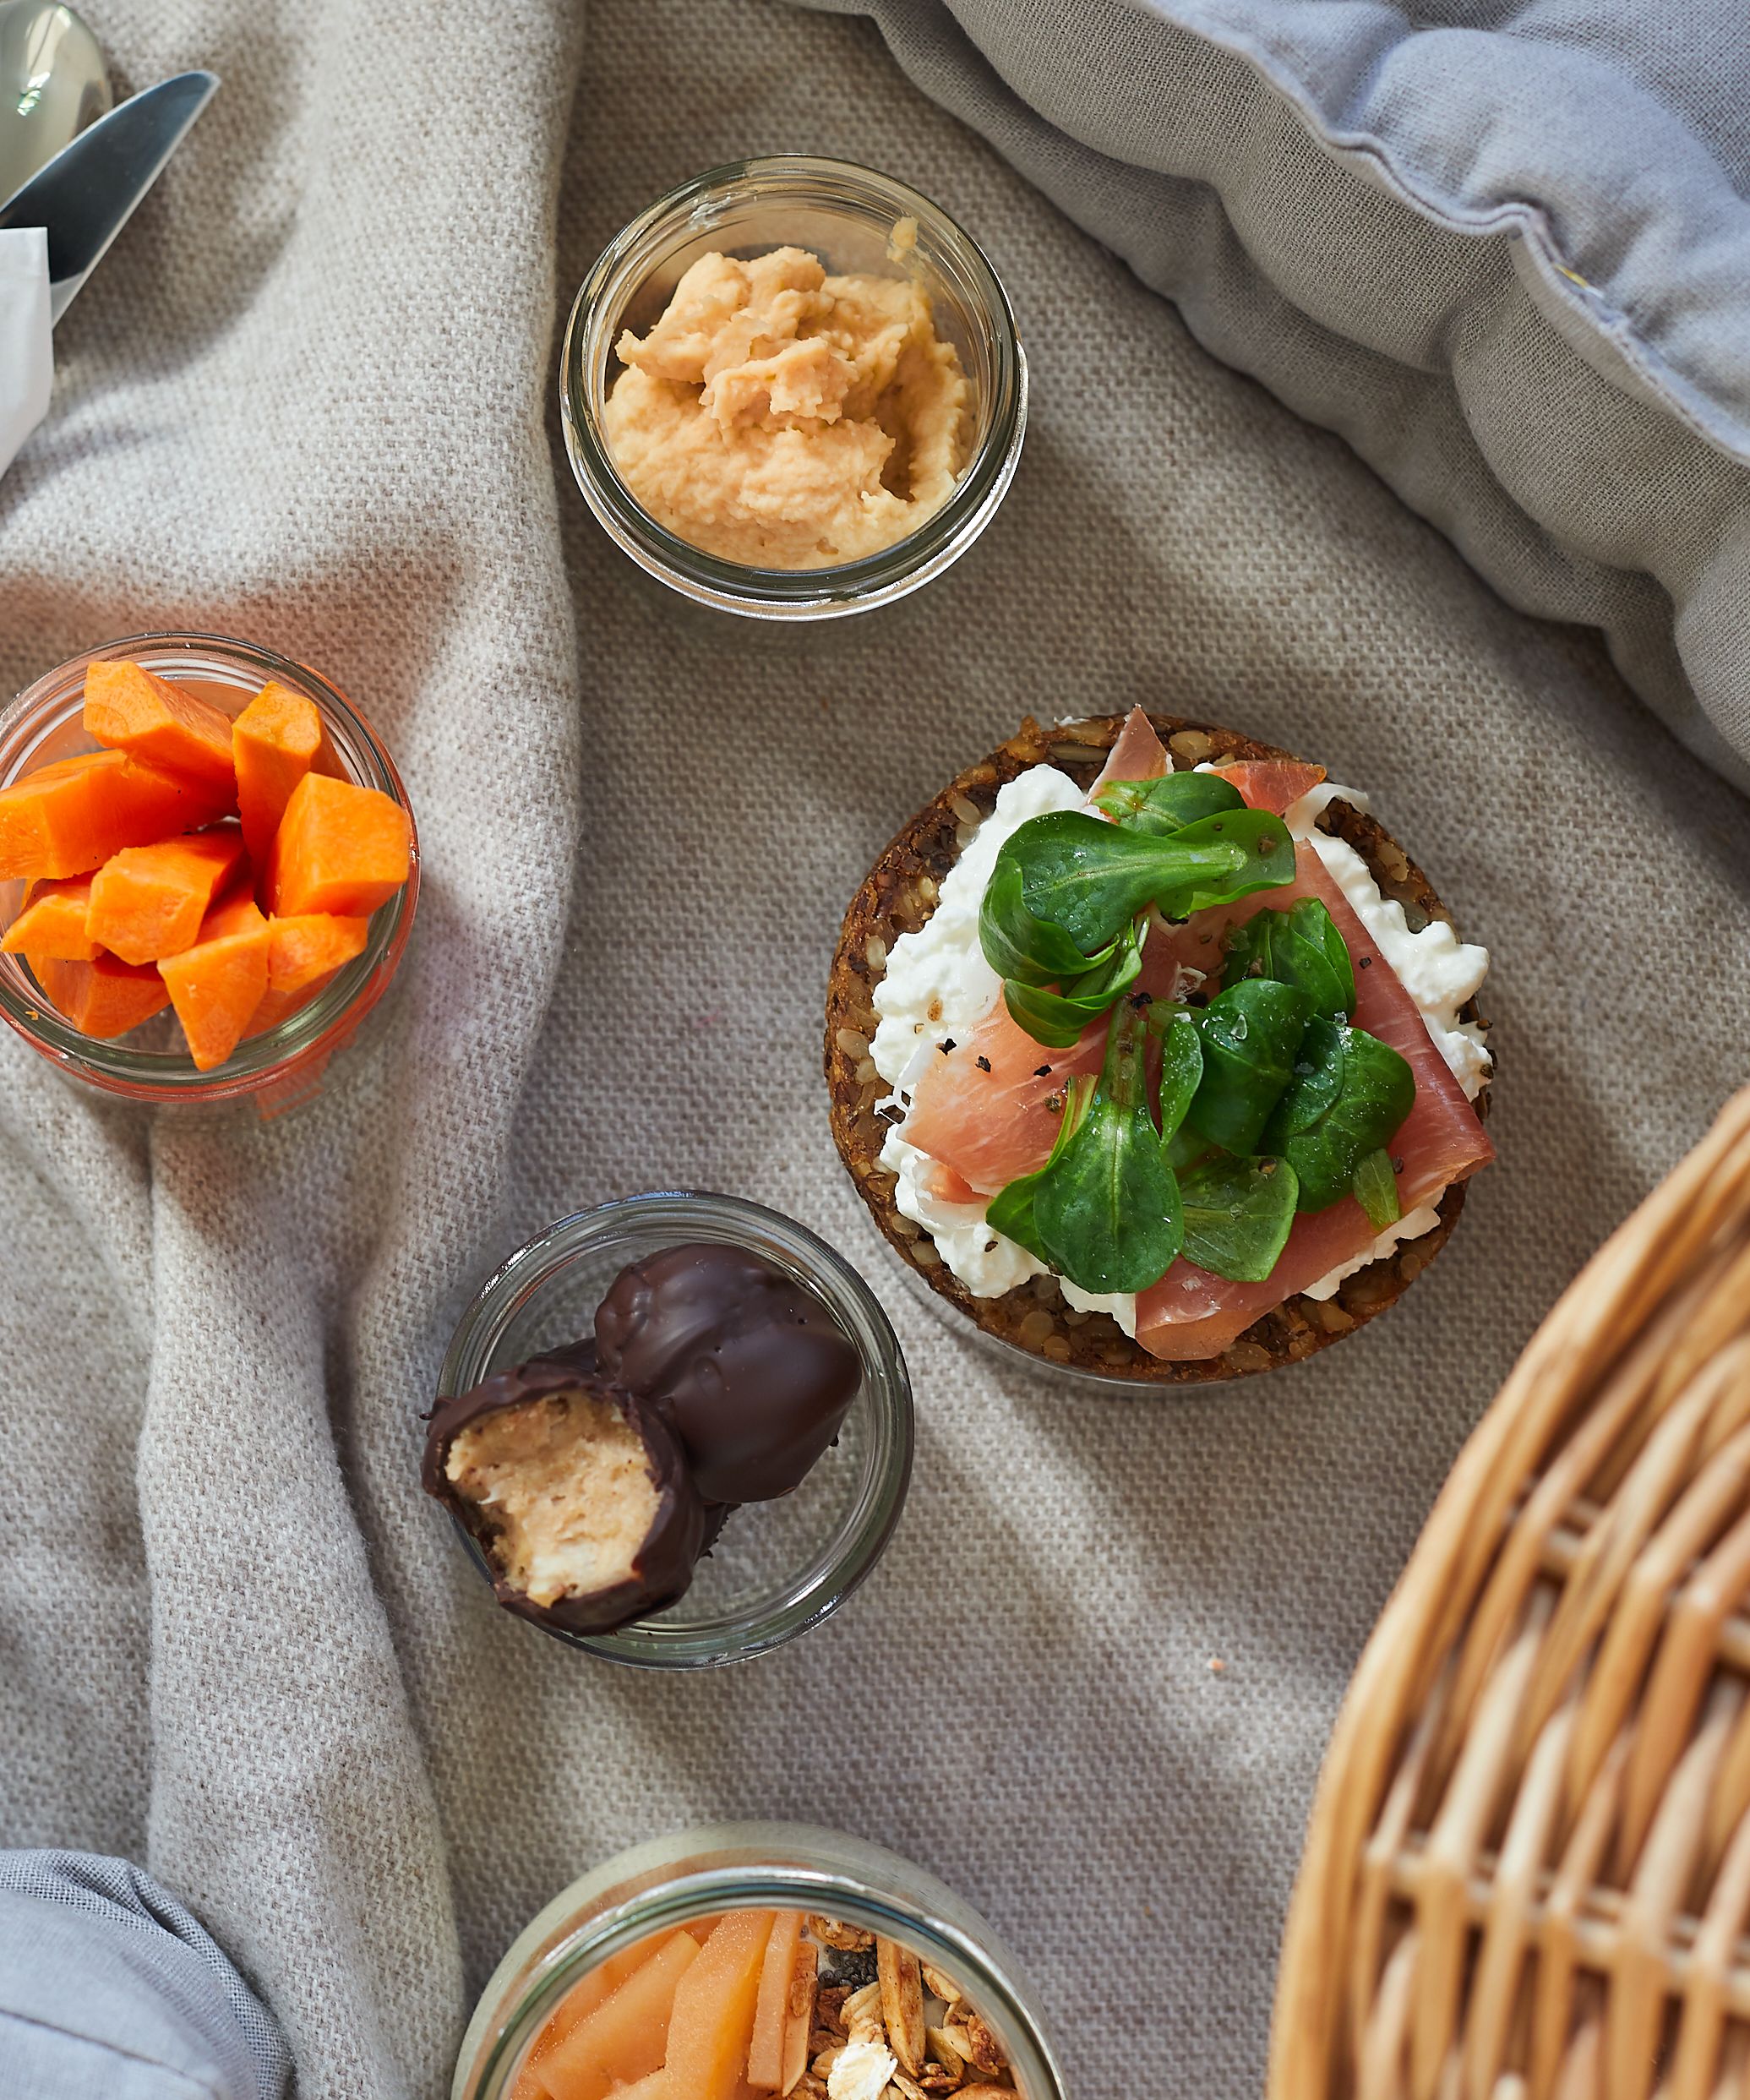 Picknickdecke mit geschnittenen Möhren, Cashew-Schokoladen-Kugeln, Hummus und Körnerbrot belegt mit körnigem Frischkäse, Schinken und Feldsalat